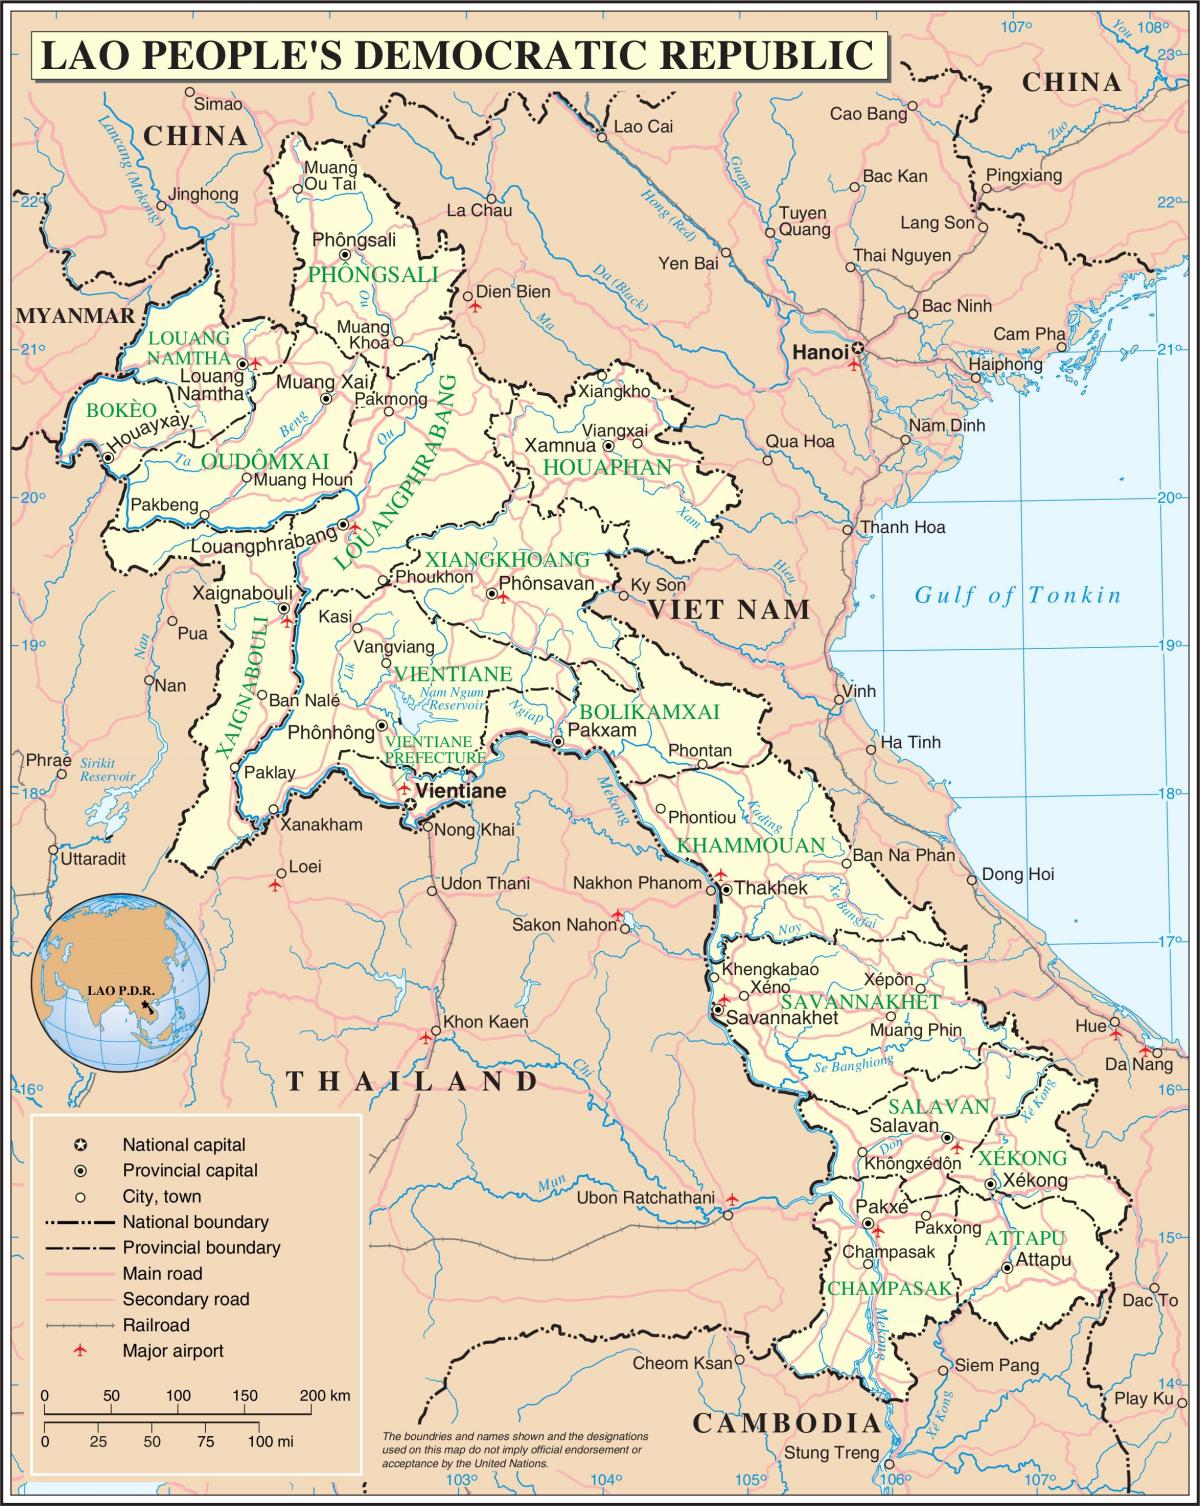 Kort over laos vej